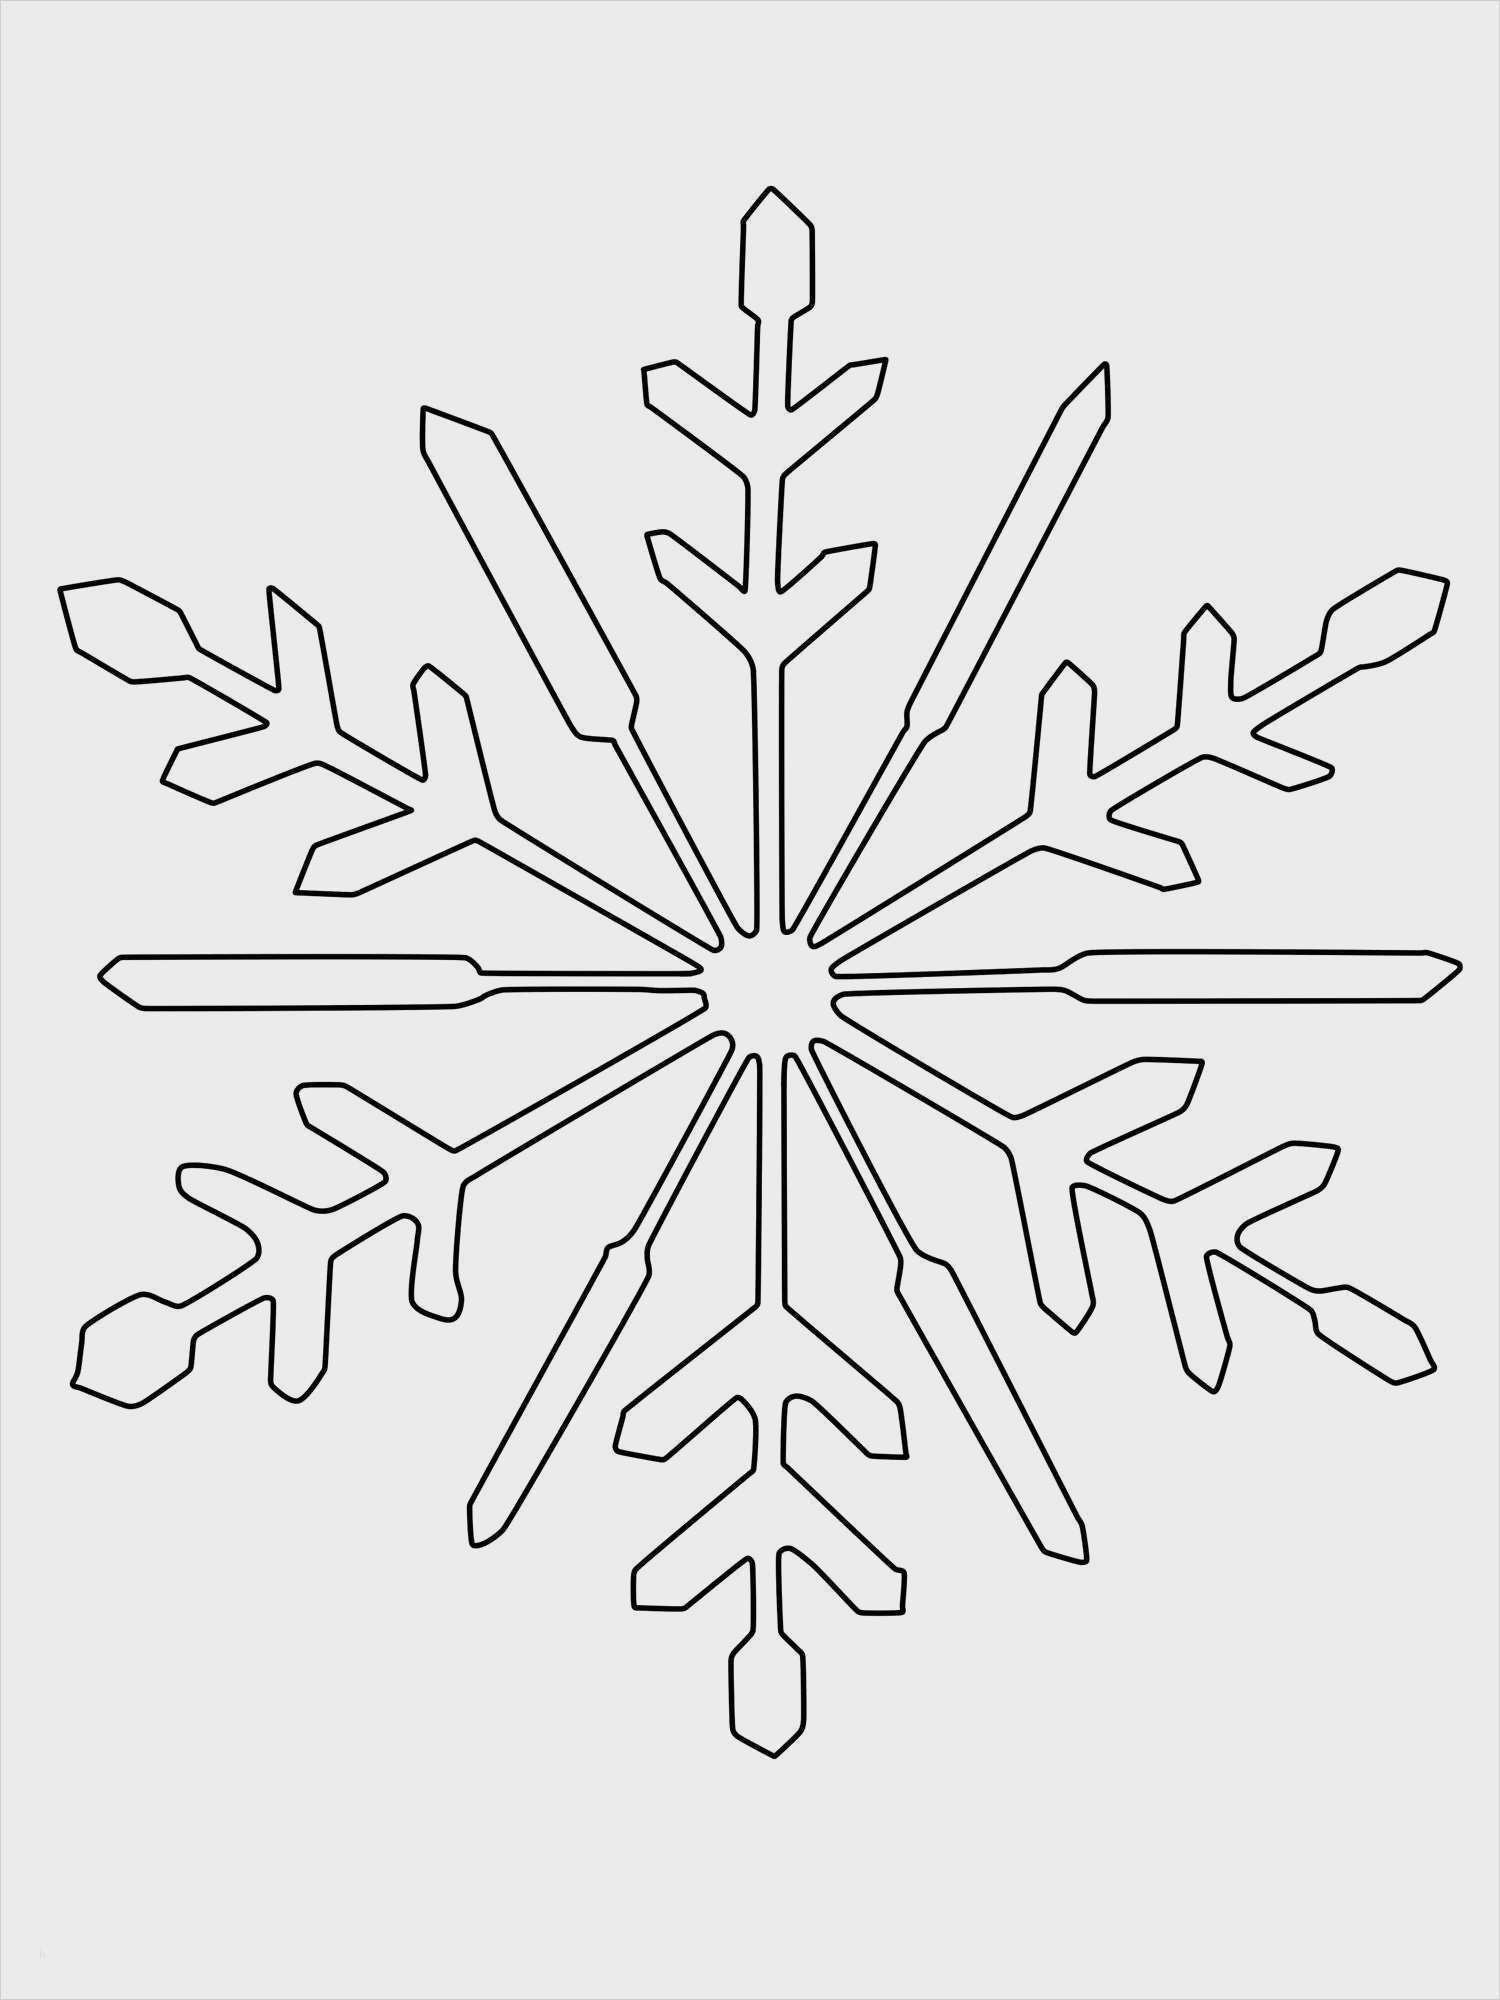 20 Genial Schneeflocken Vorlage Ausdrucken Gut Designt Sie Konnen Anpassen Fur Ihre Wichtigst Schneeflocke Schablone Schneeflocke Vorlage Schneeflocken Basteln